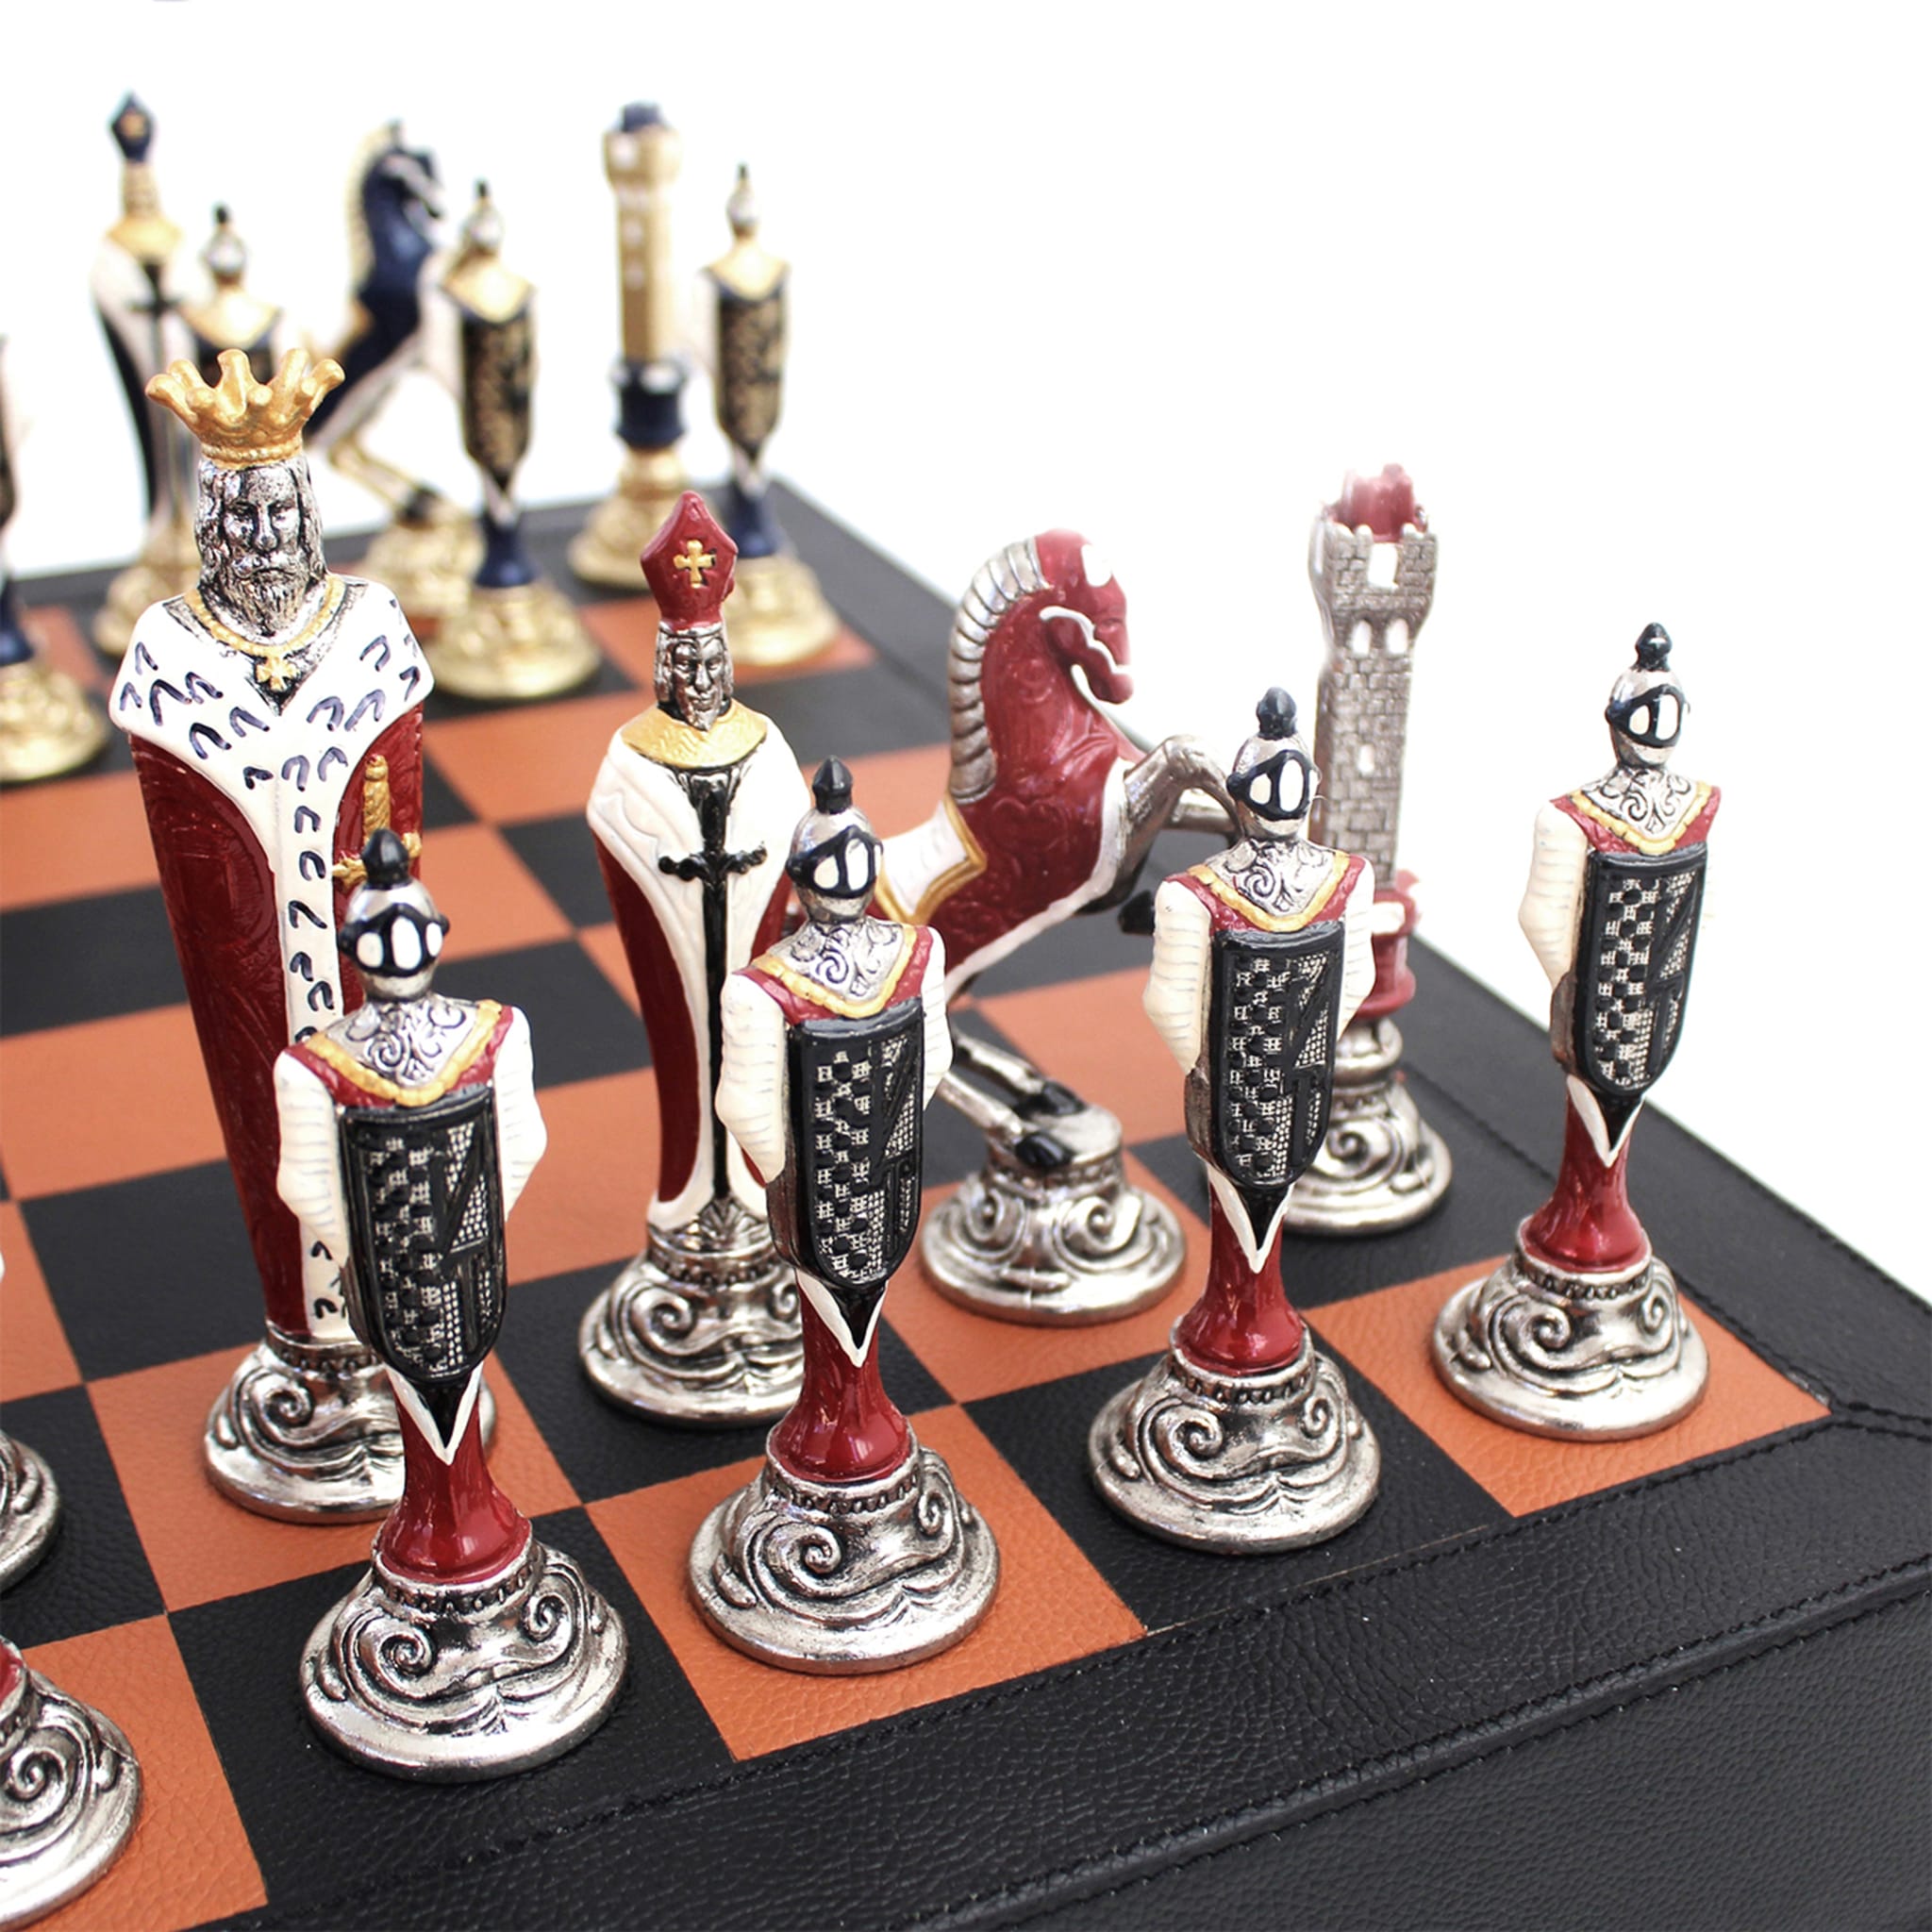 Rinascimento Fiorentino Chess Set - Alternative view 4